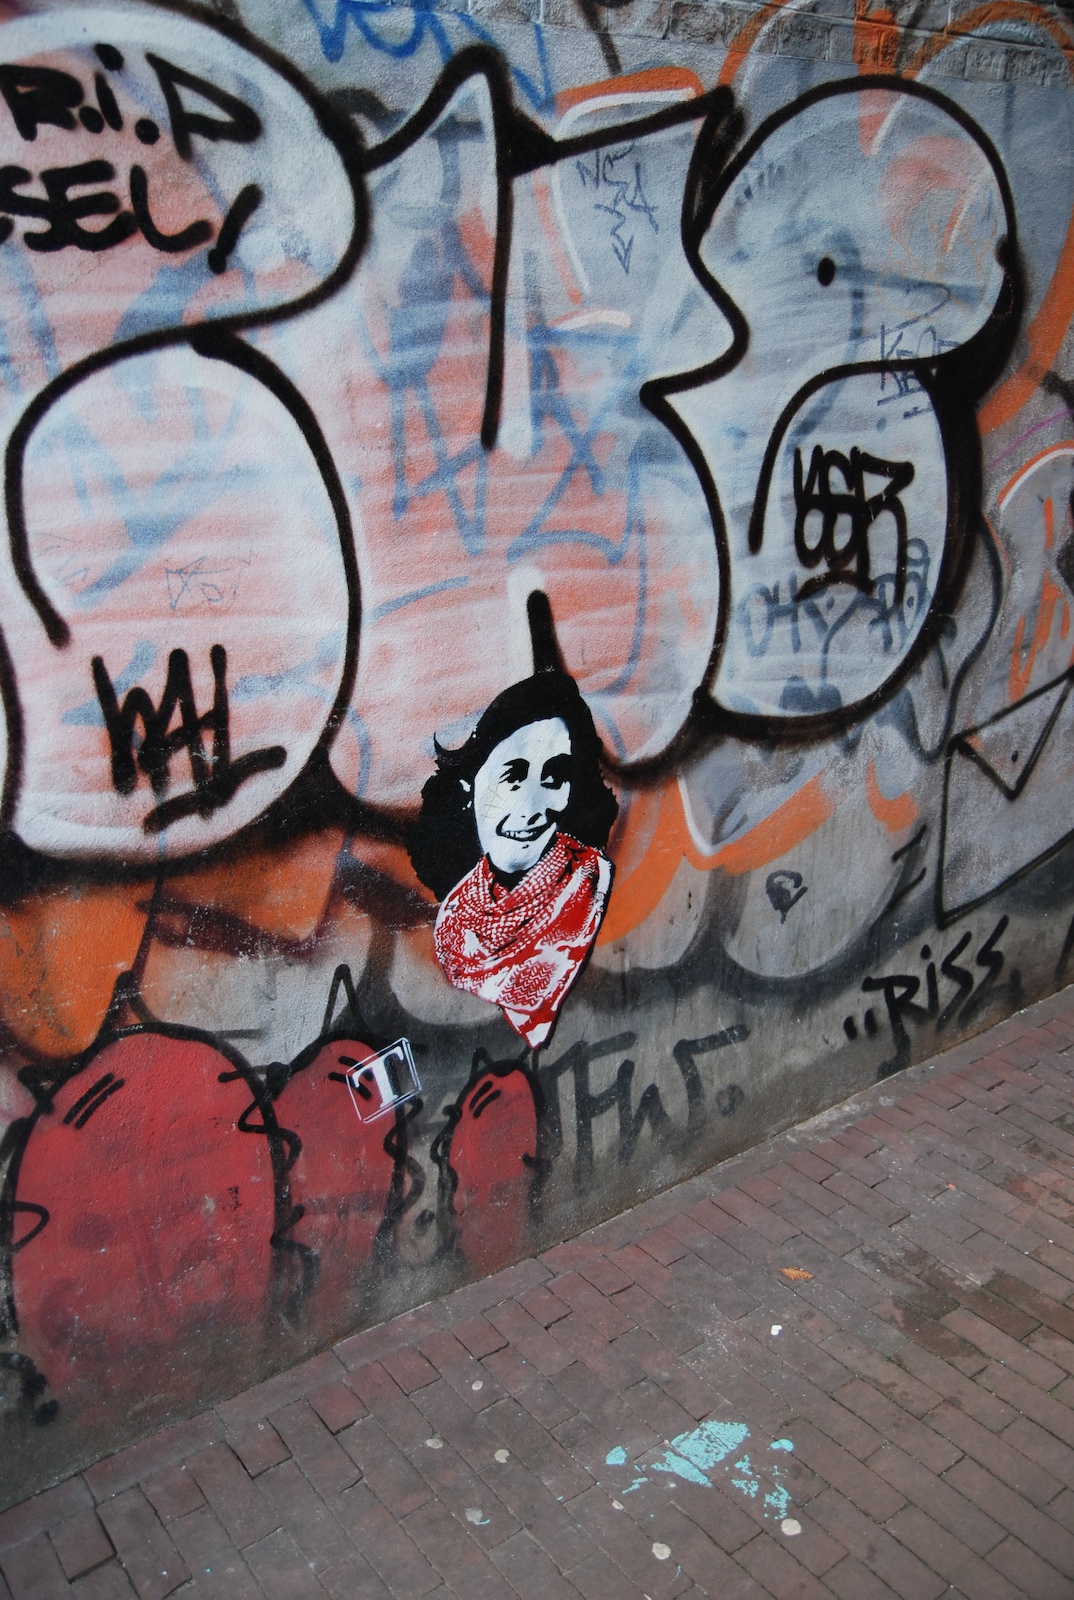 Anne Frank | Amsterdam stencil. | By: donnamarijne | Flickr - Photo ...